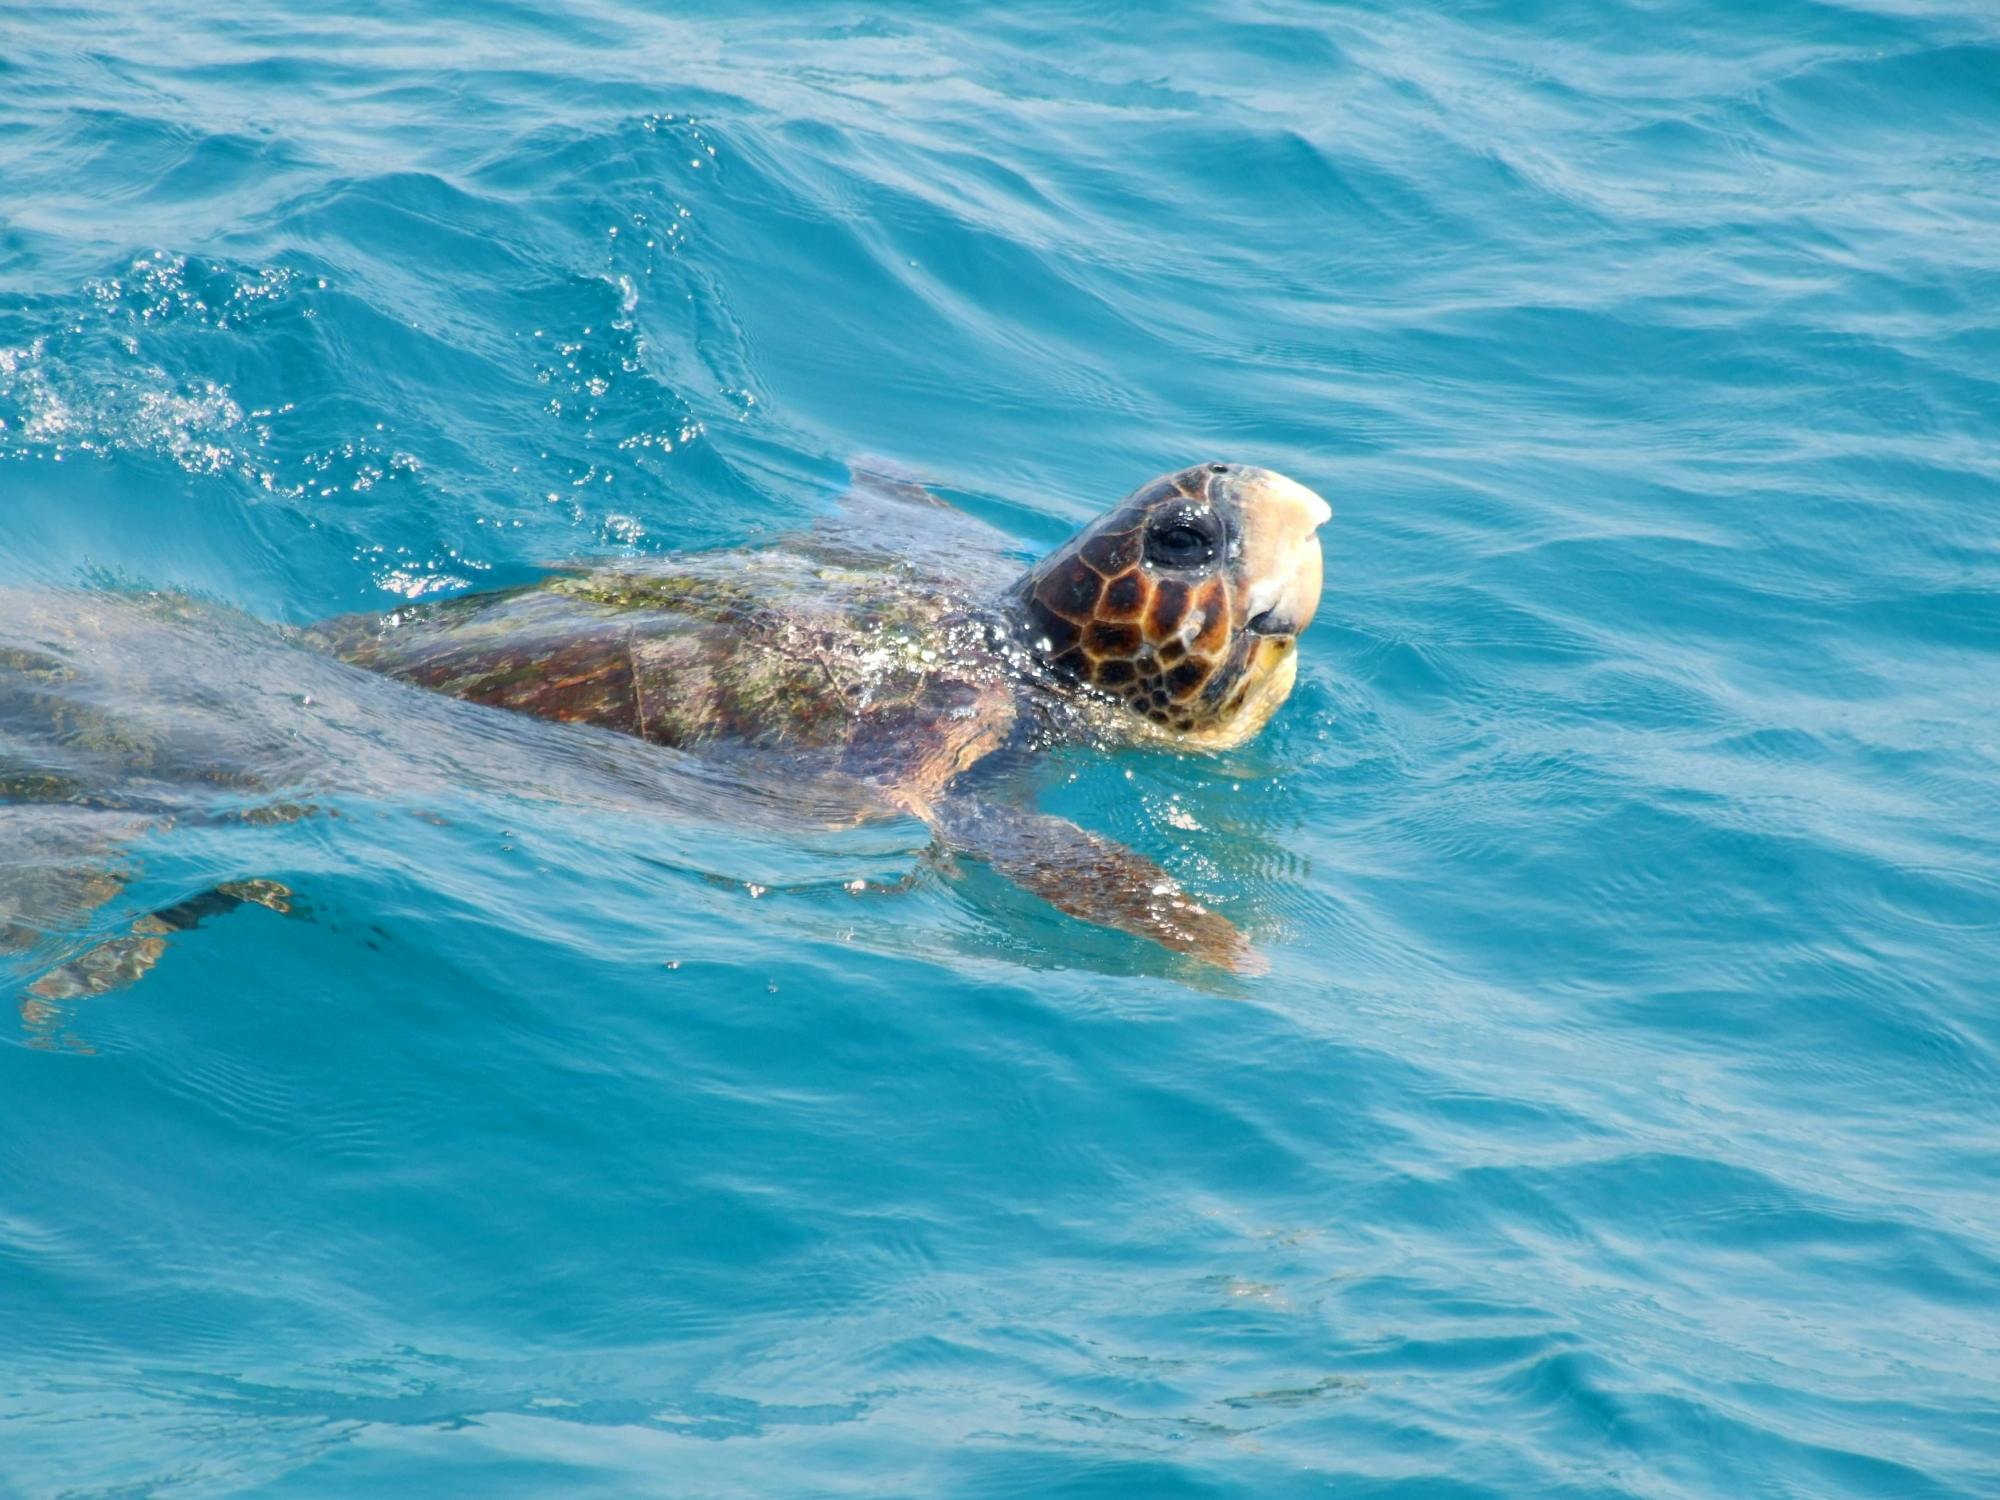 Turtle-spotting Cruise of Marathonisi Island and Keri Peninsula